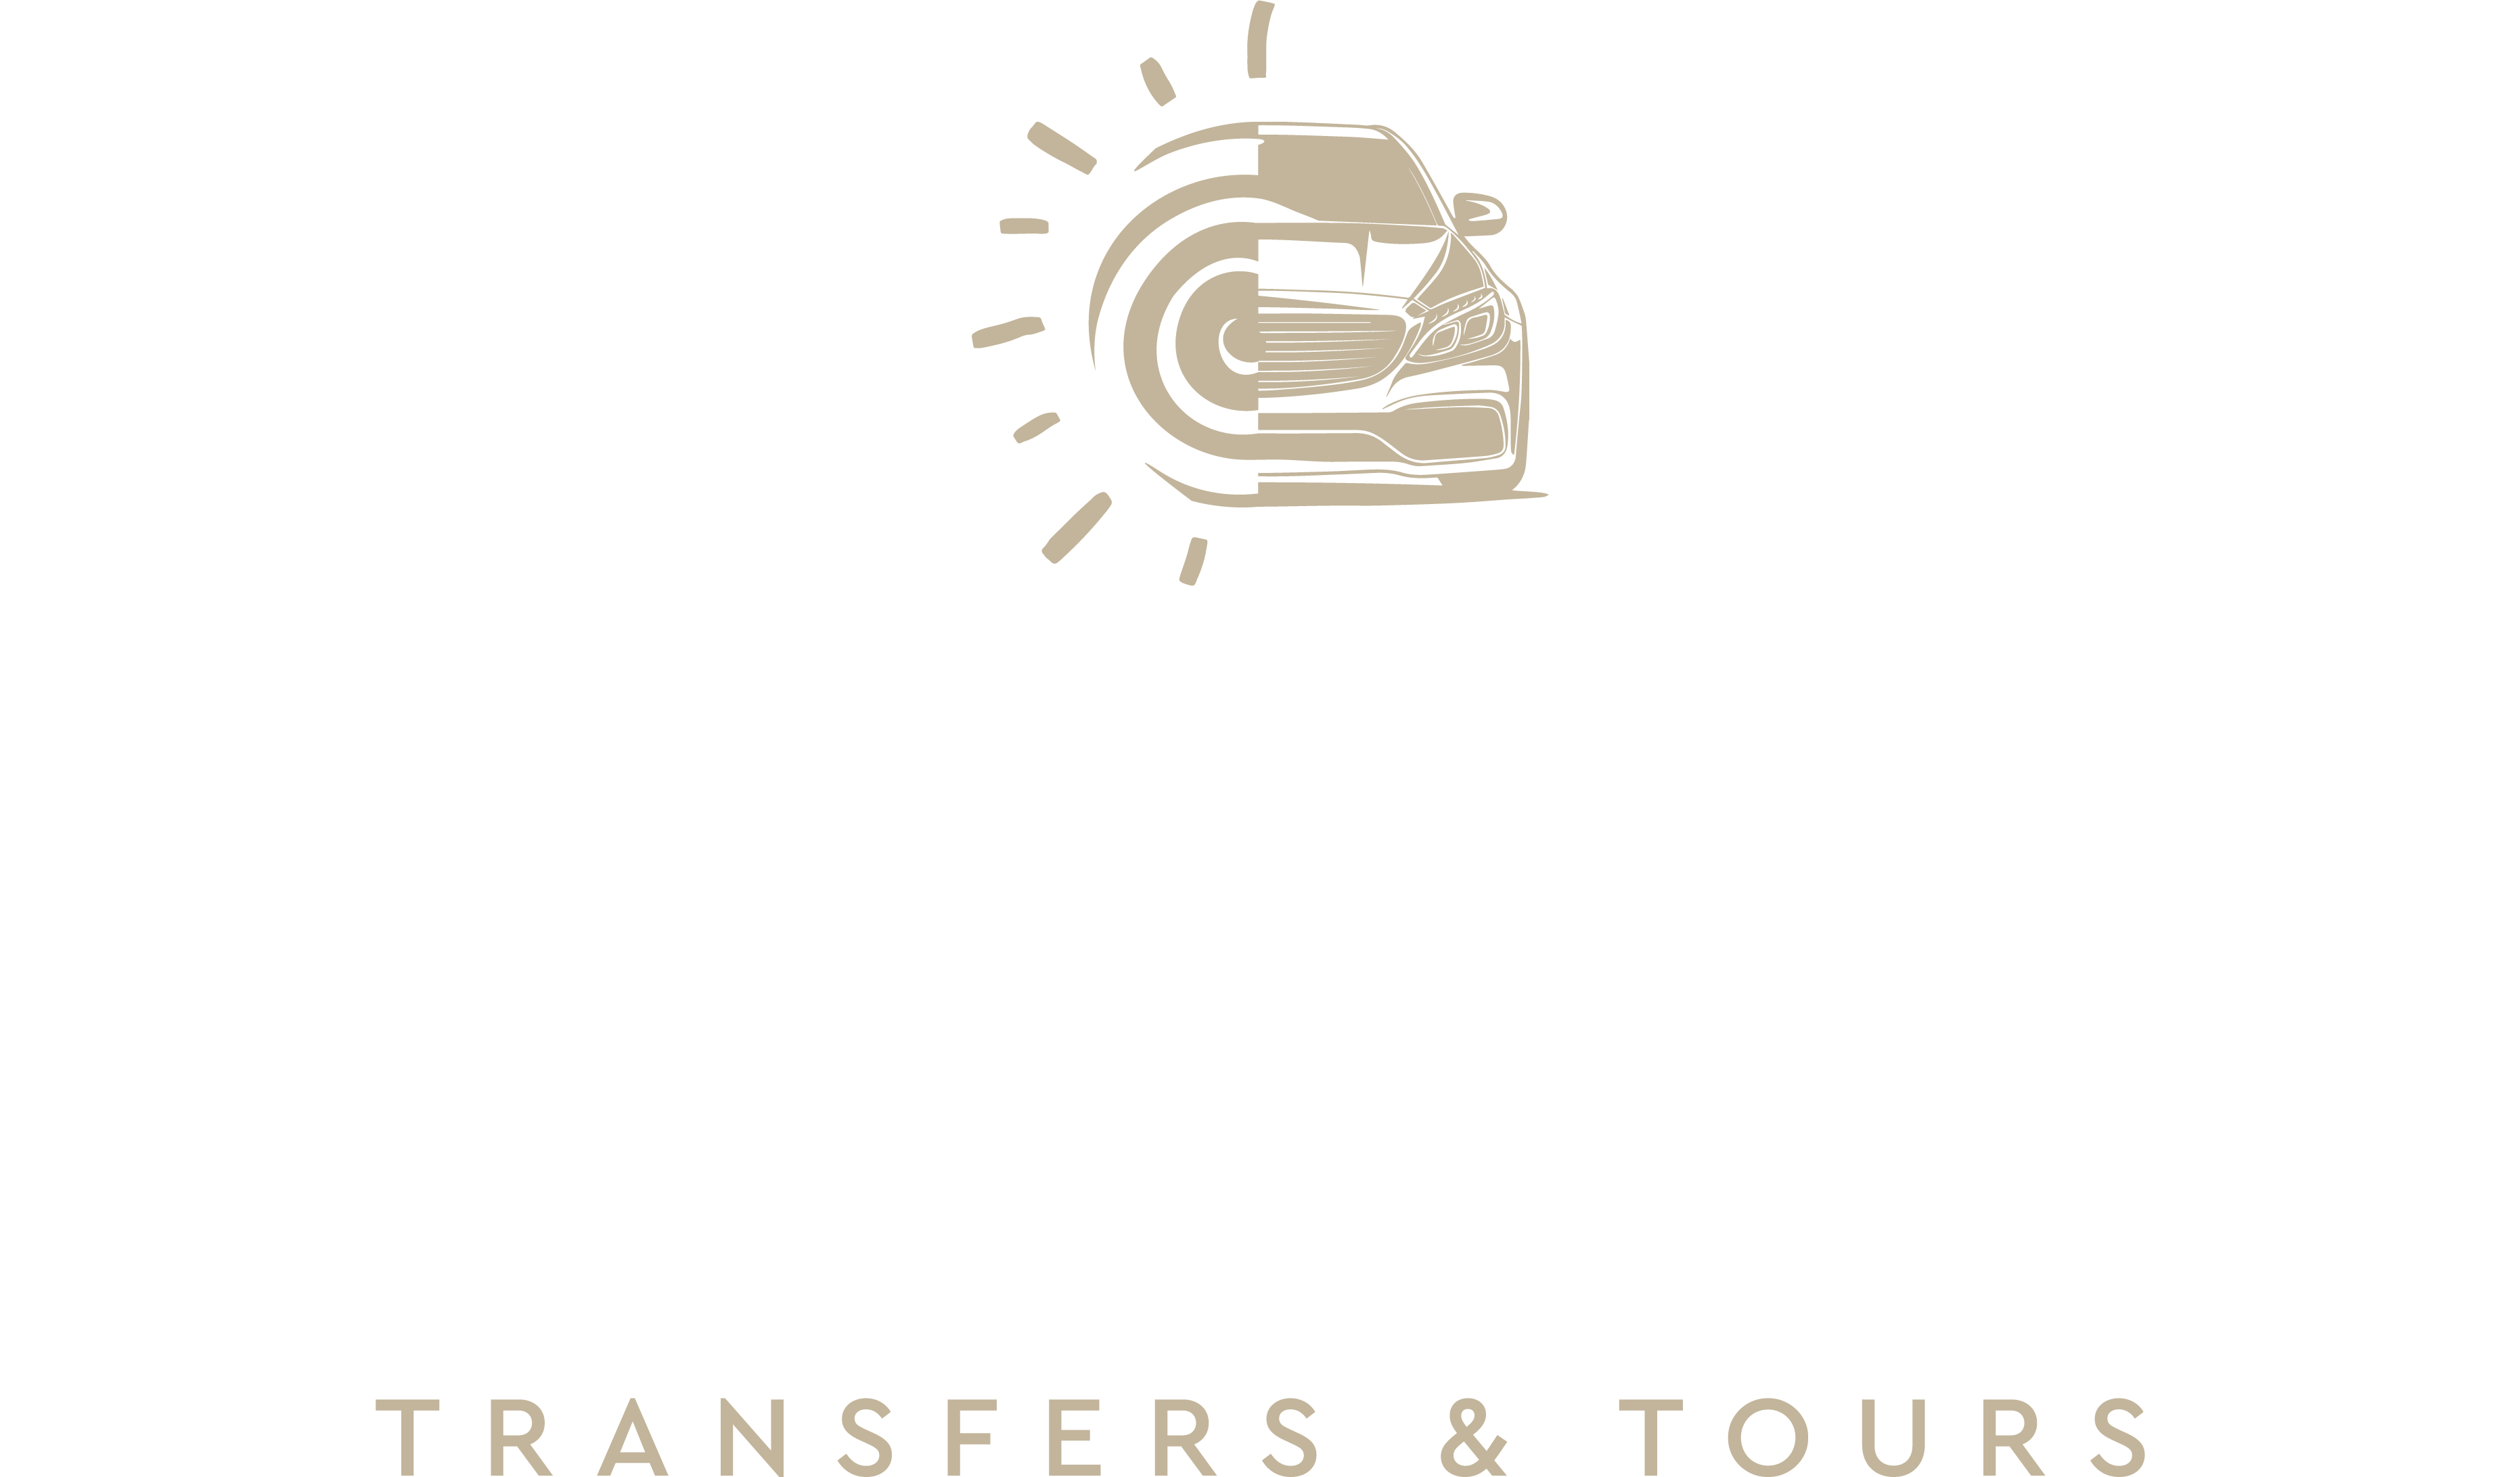 Naxos Earth Tours